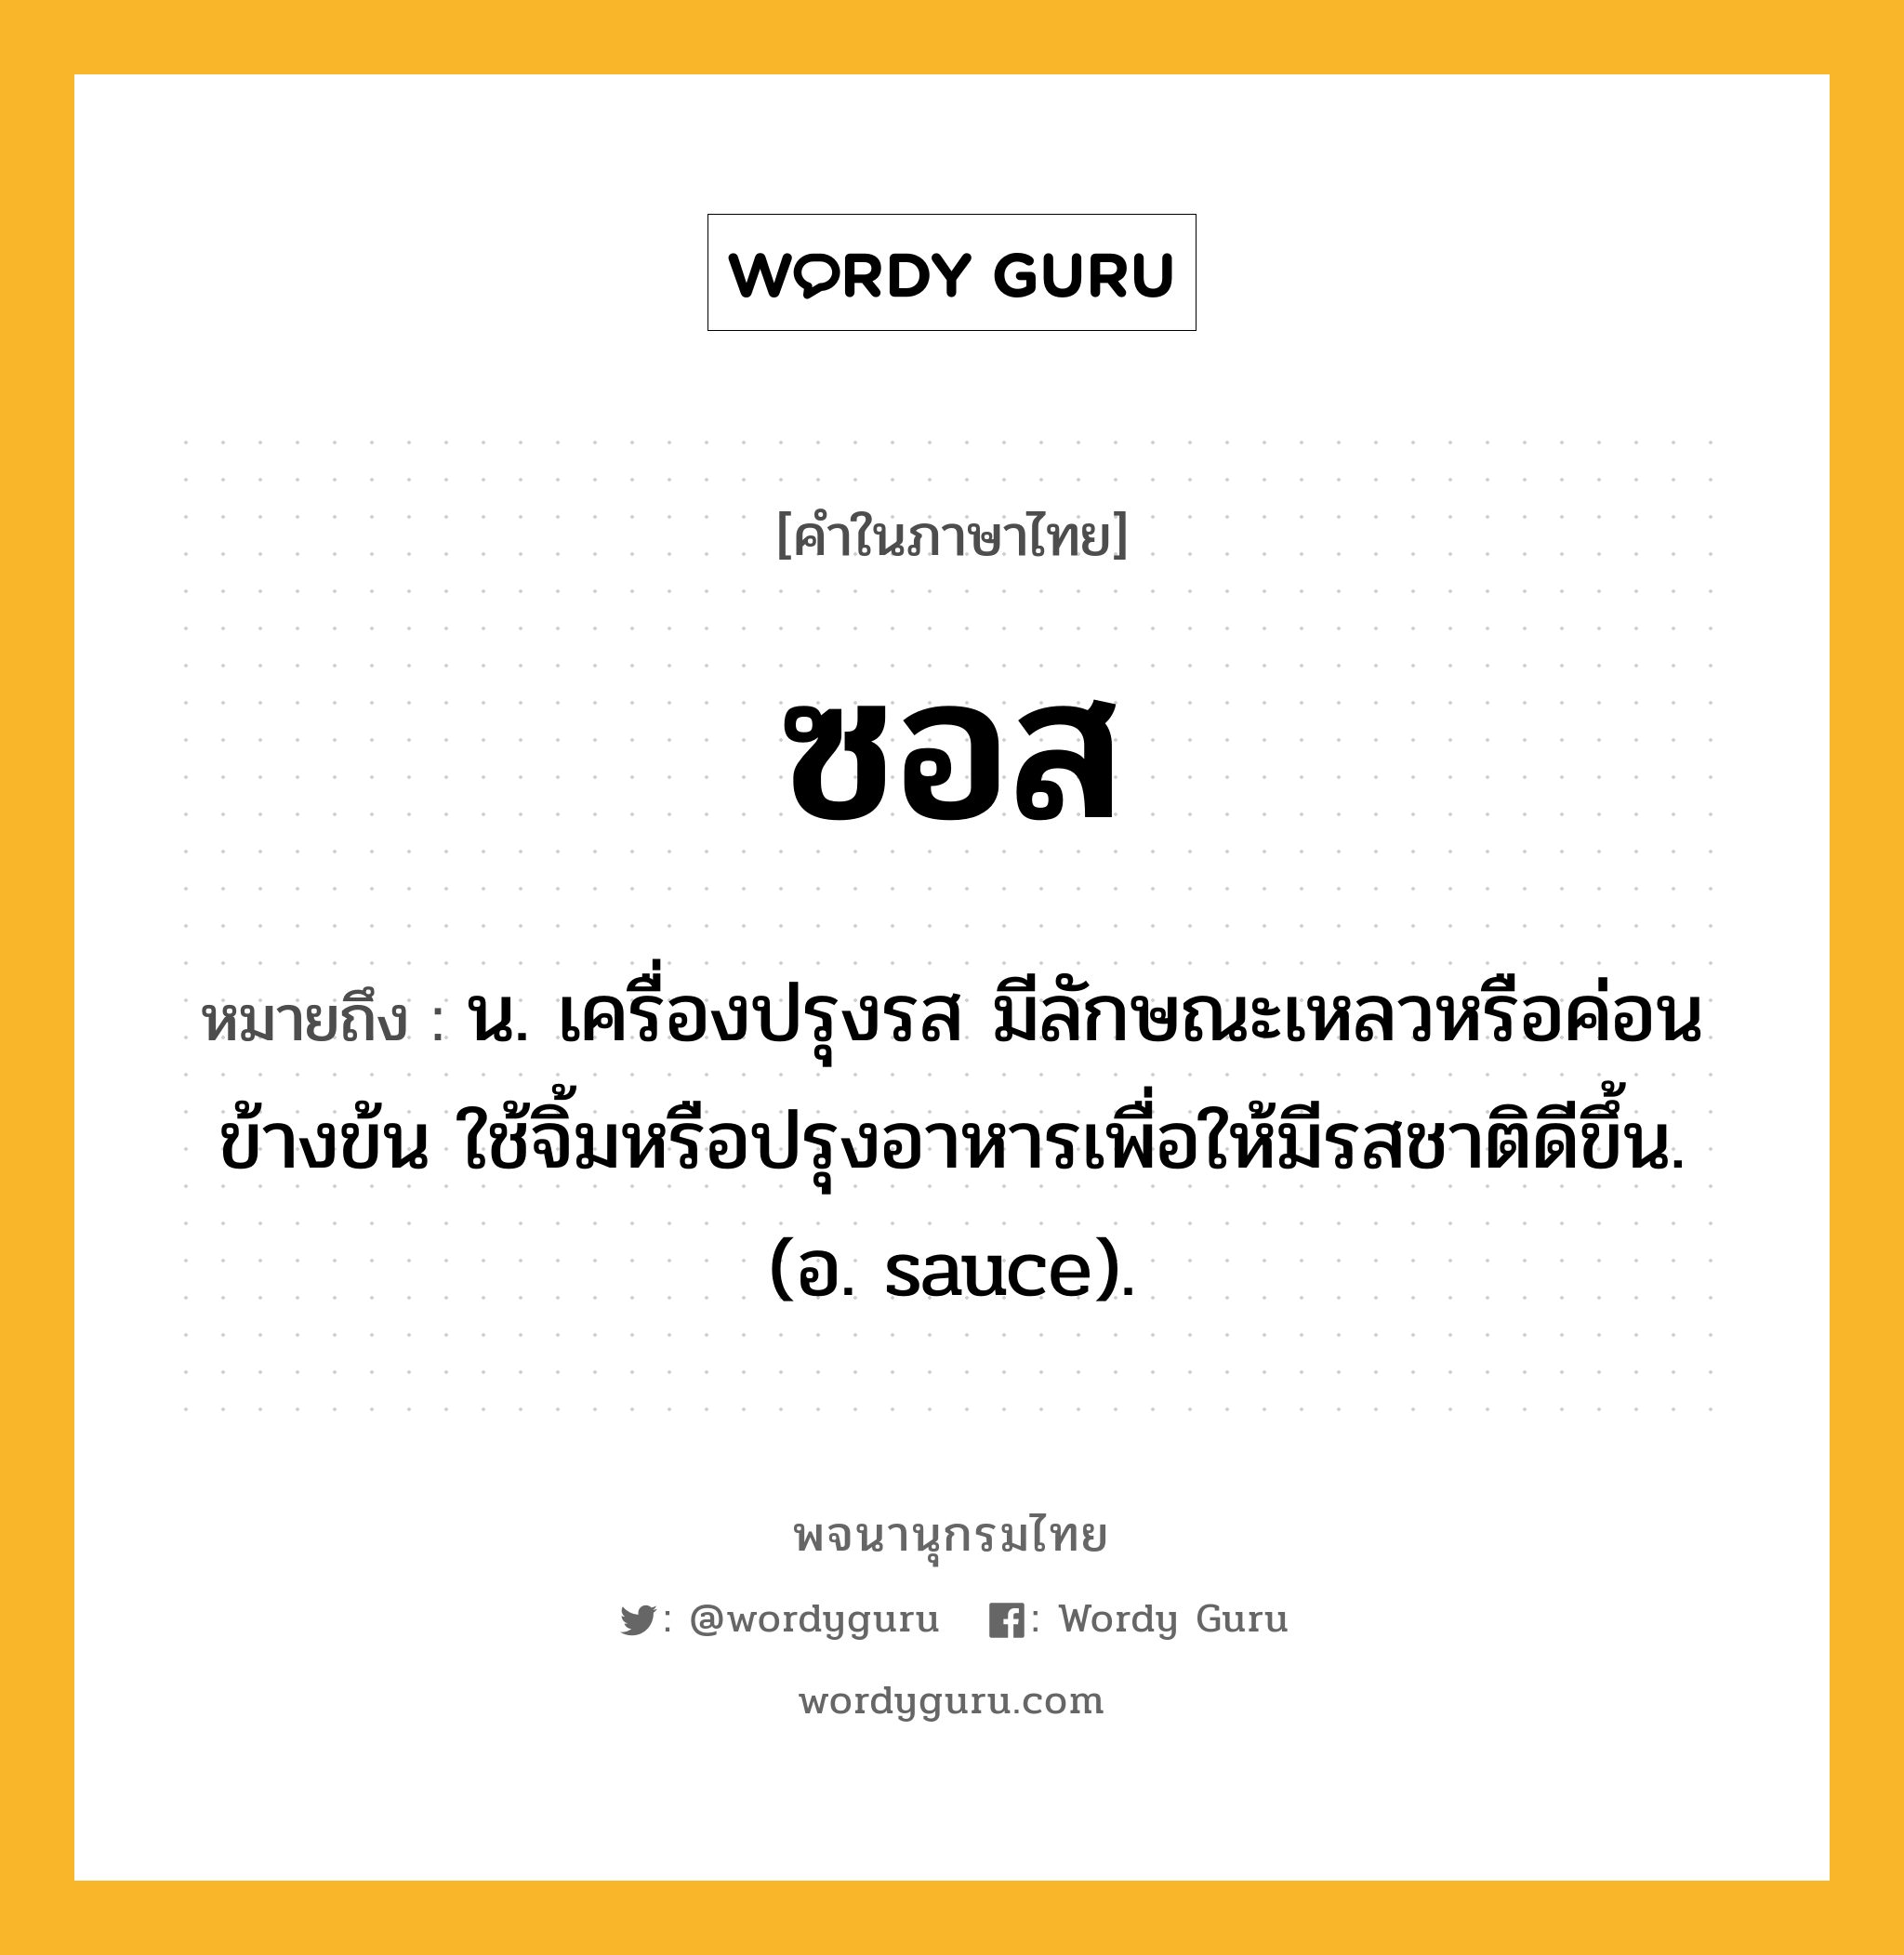 ซอส หมายถึงอะไร?, คำในภาษาไทย ซอส หมายถึง น. เครื่องปรุงรส มีลักษณะเหลวหรือค่อนข้างข้น ใช้จิ้มหรือปรุงอาหารเพื่อให้มีรสชาติดีขึ้น. (อ. sauce).